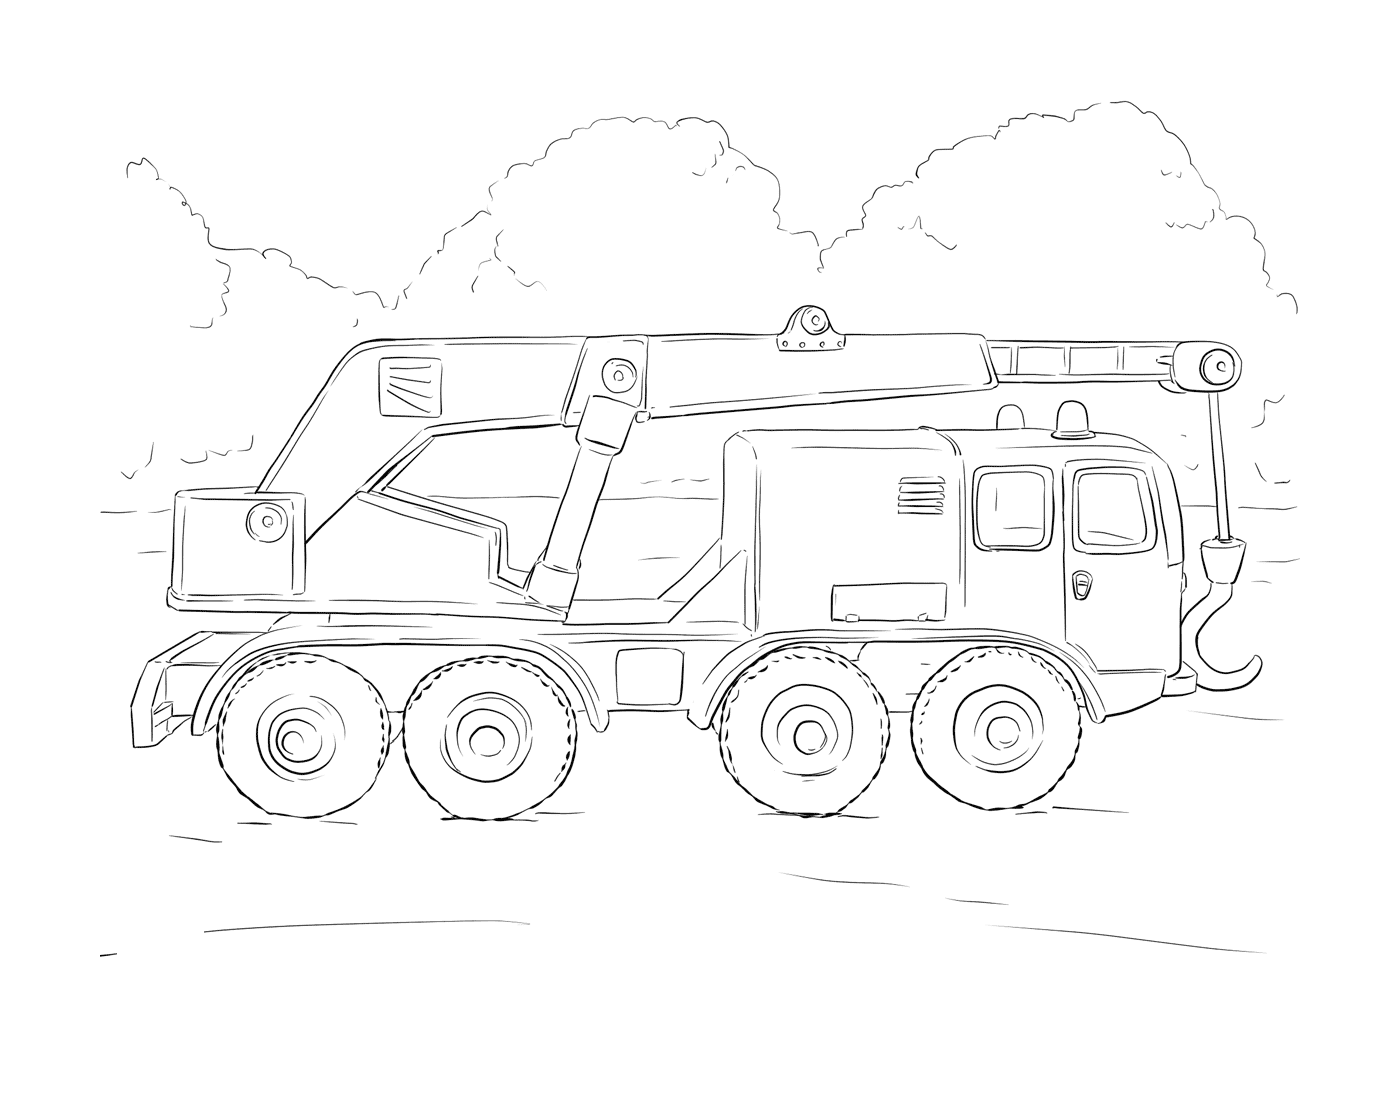  Crane卡车,起重装备 